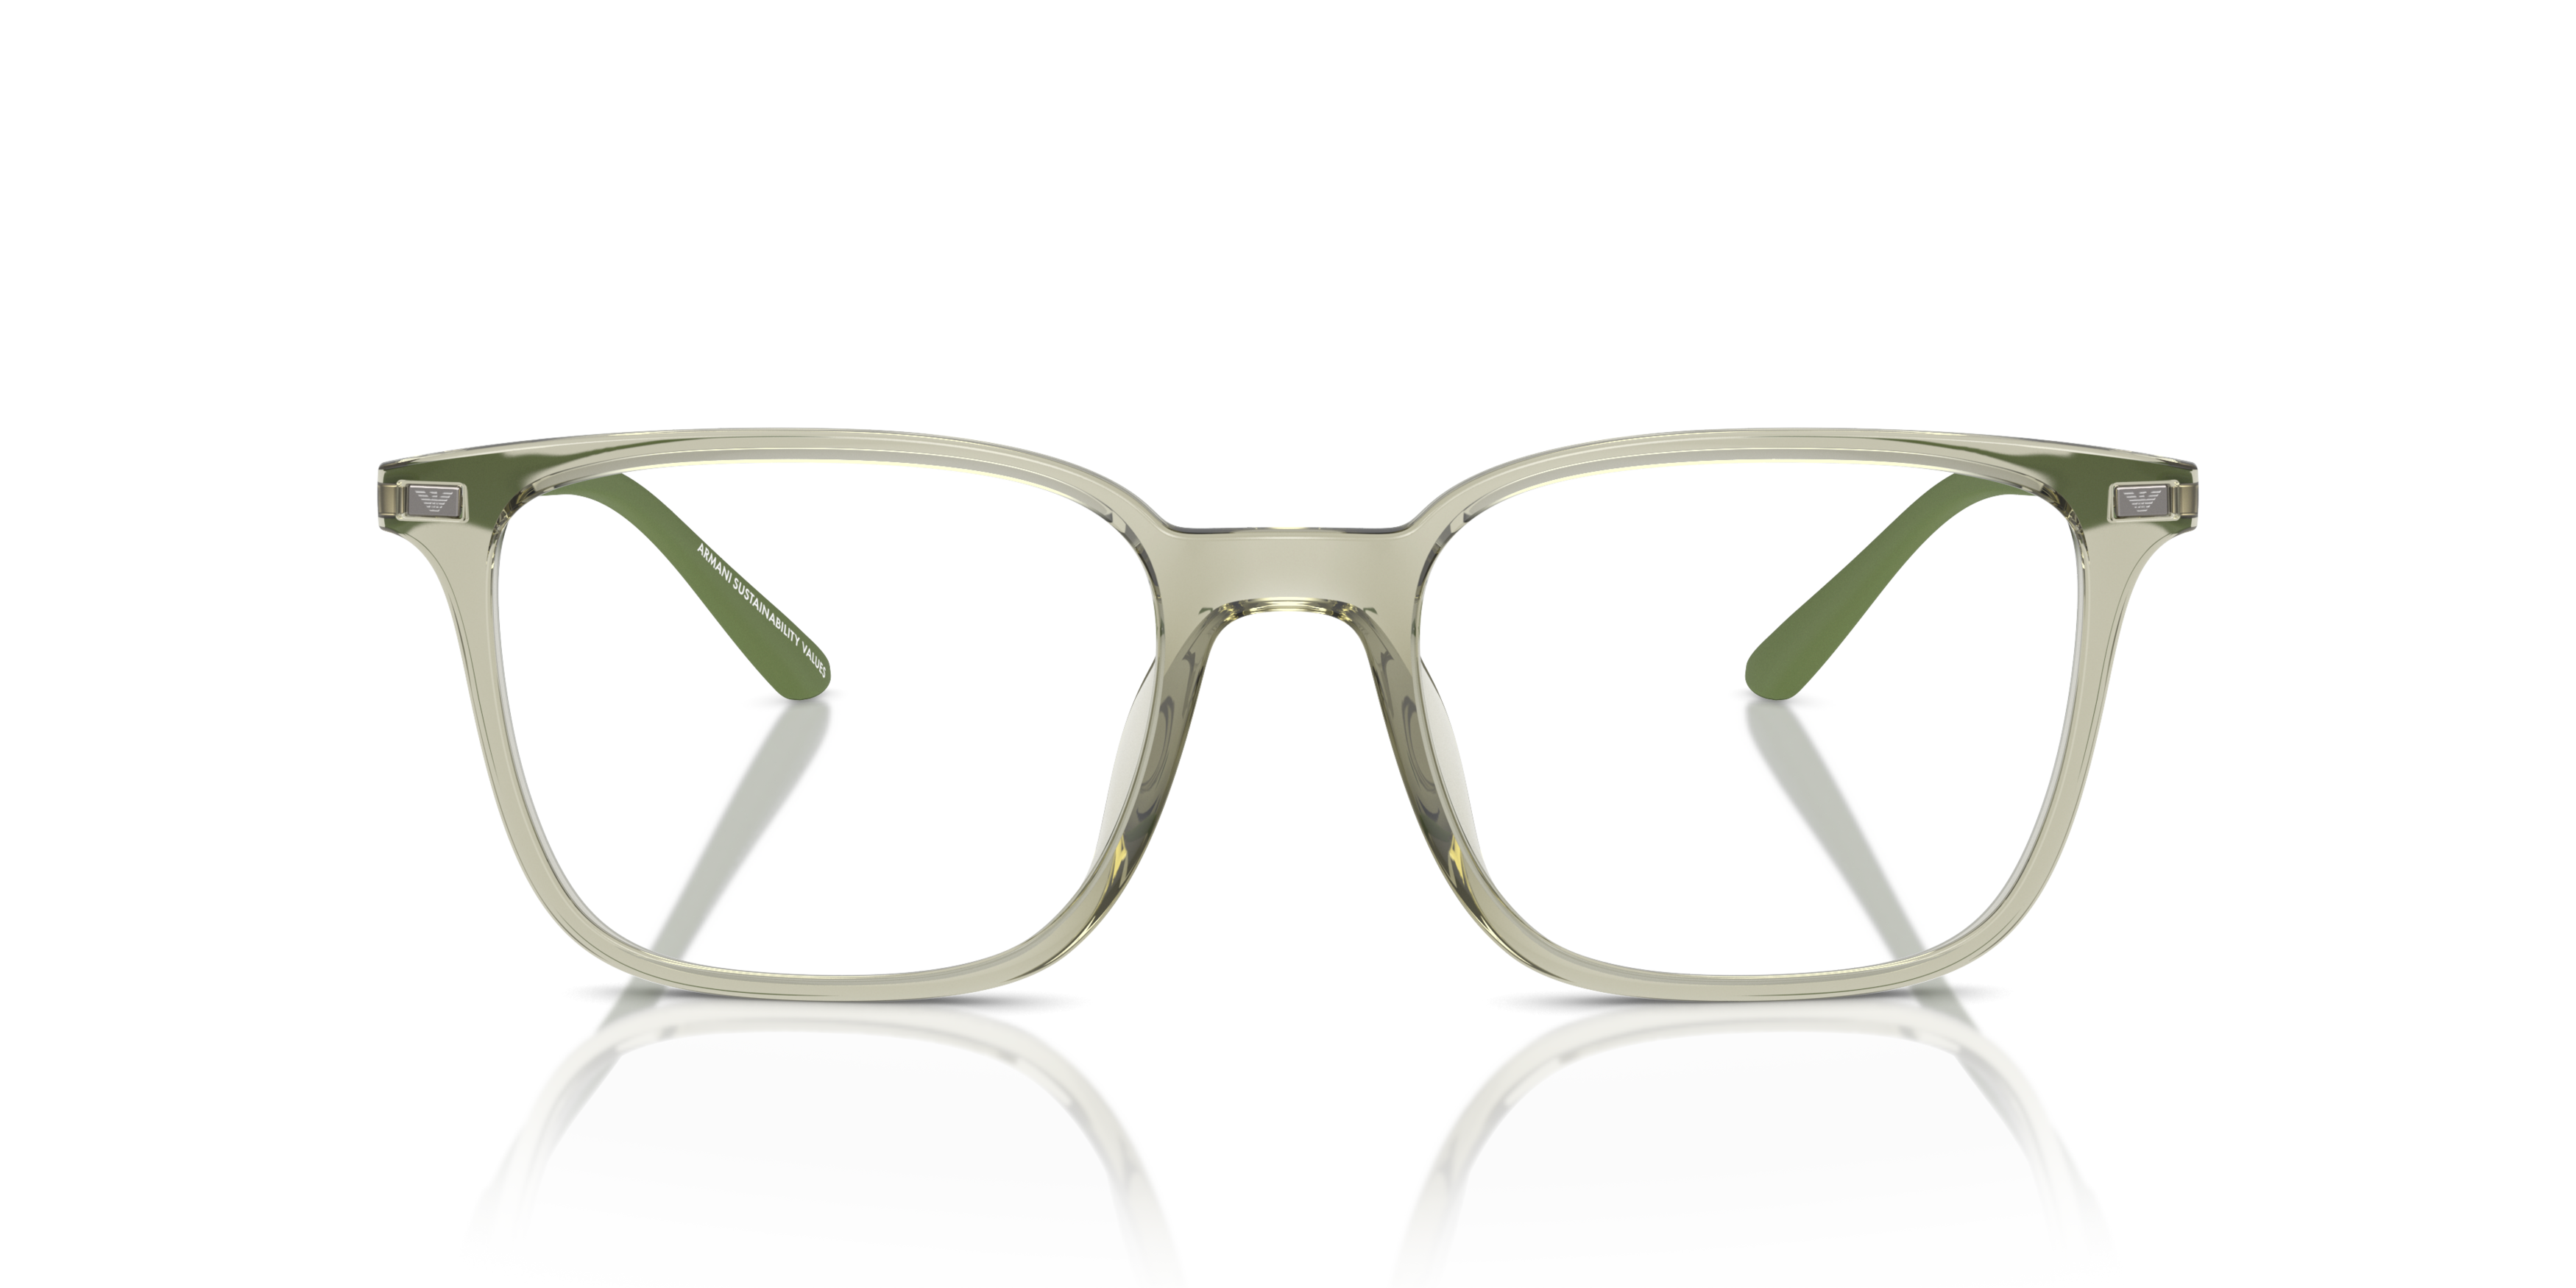 Emporio Armani EA 3242U Glasses